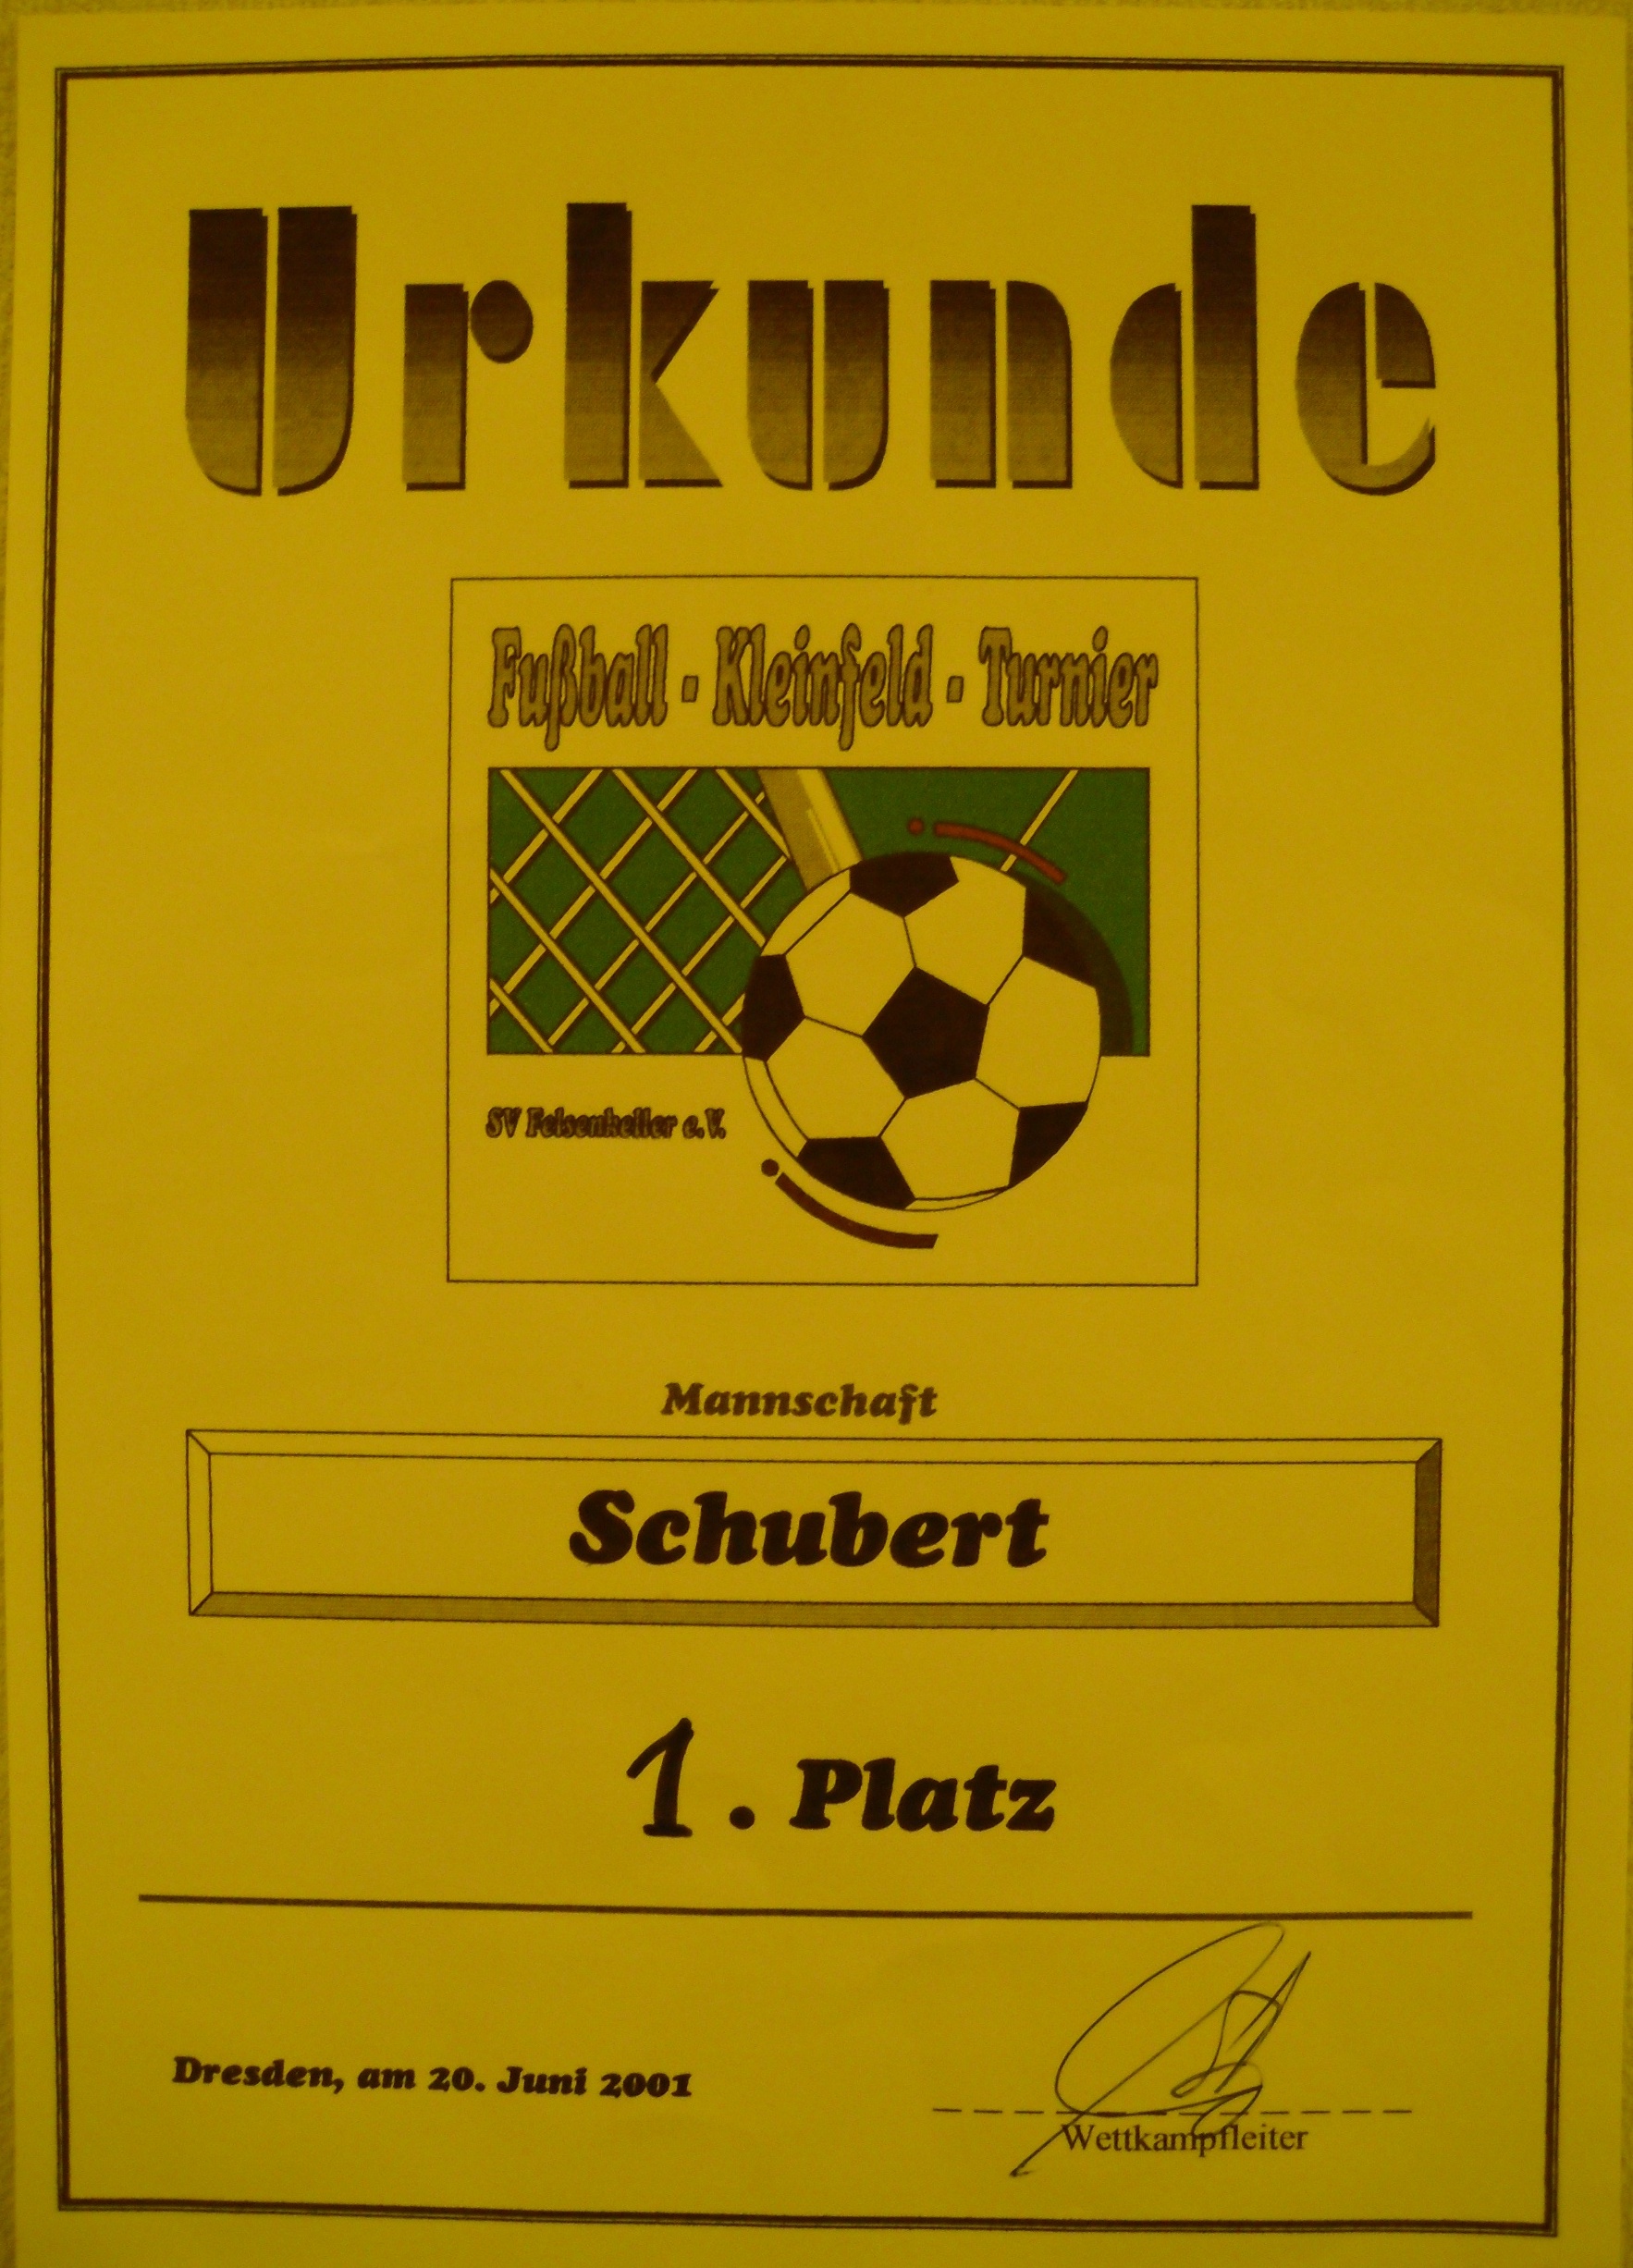 Urkunde der Abteilung Fussball aus dem Jahr 2001